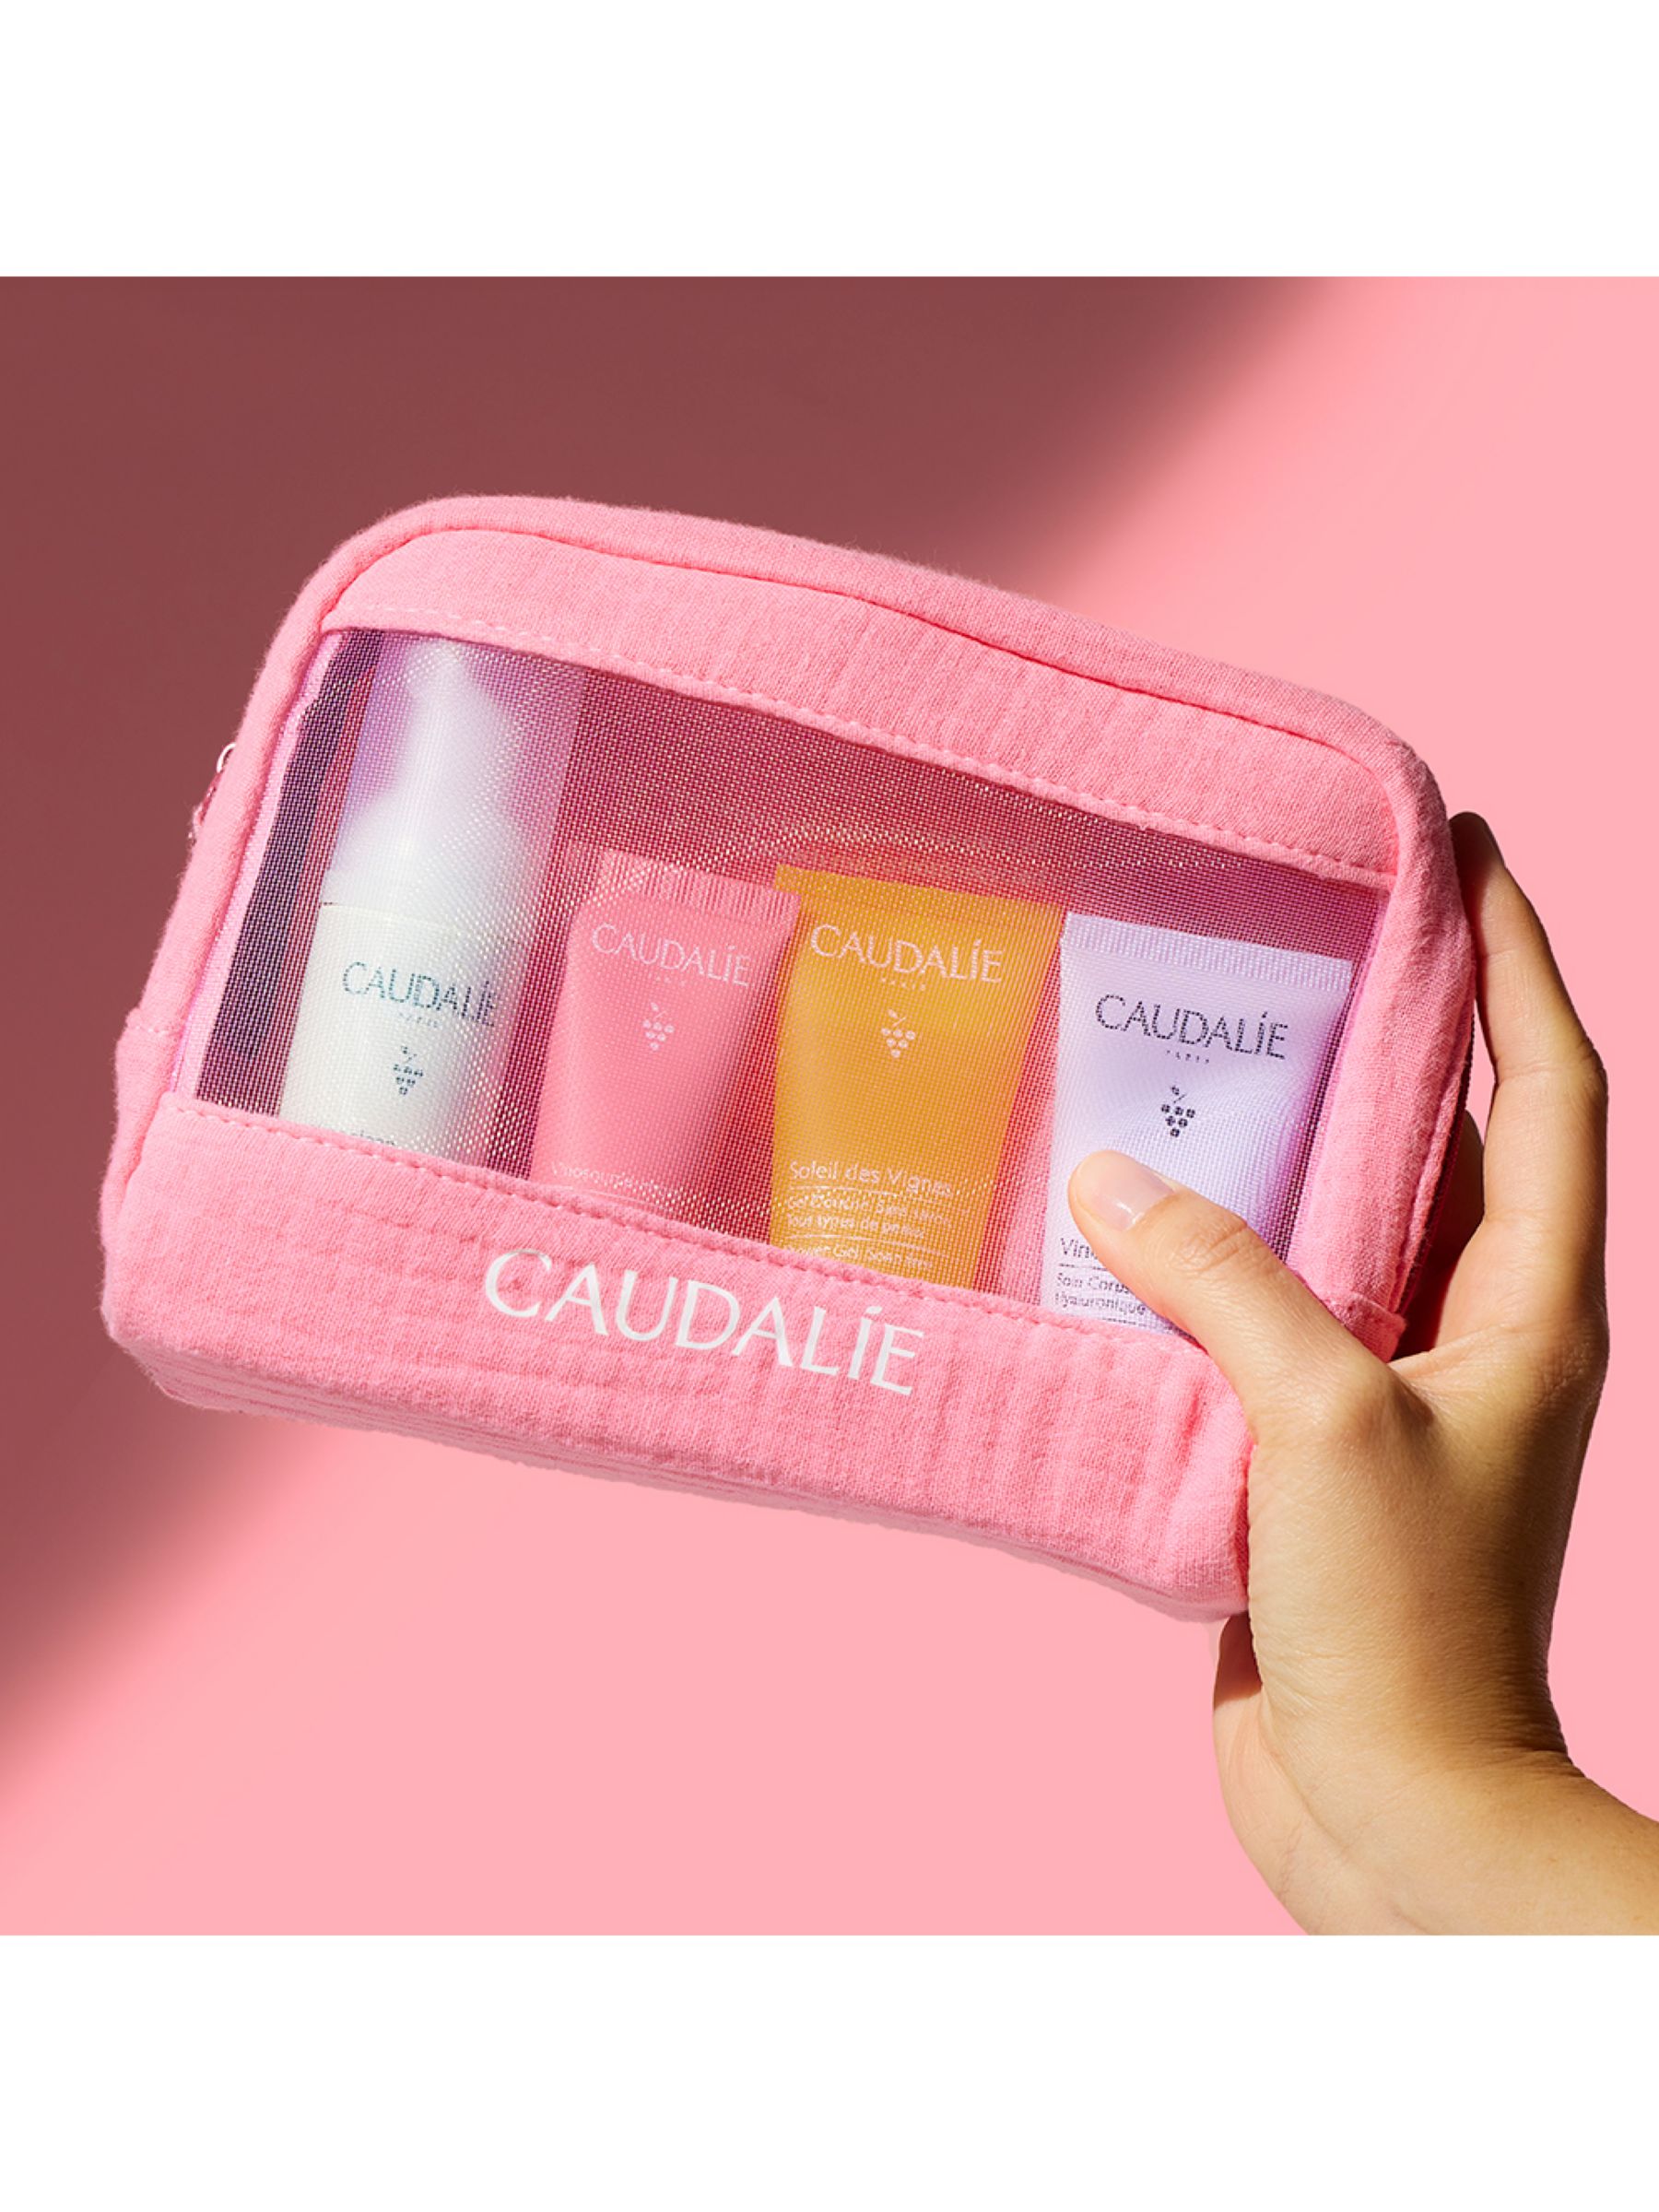 Caudalie Travel Essentials Edit Skincare Gift Set 3